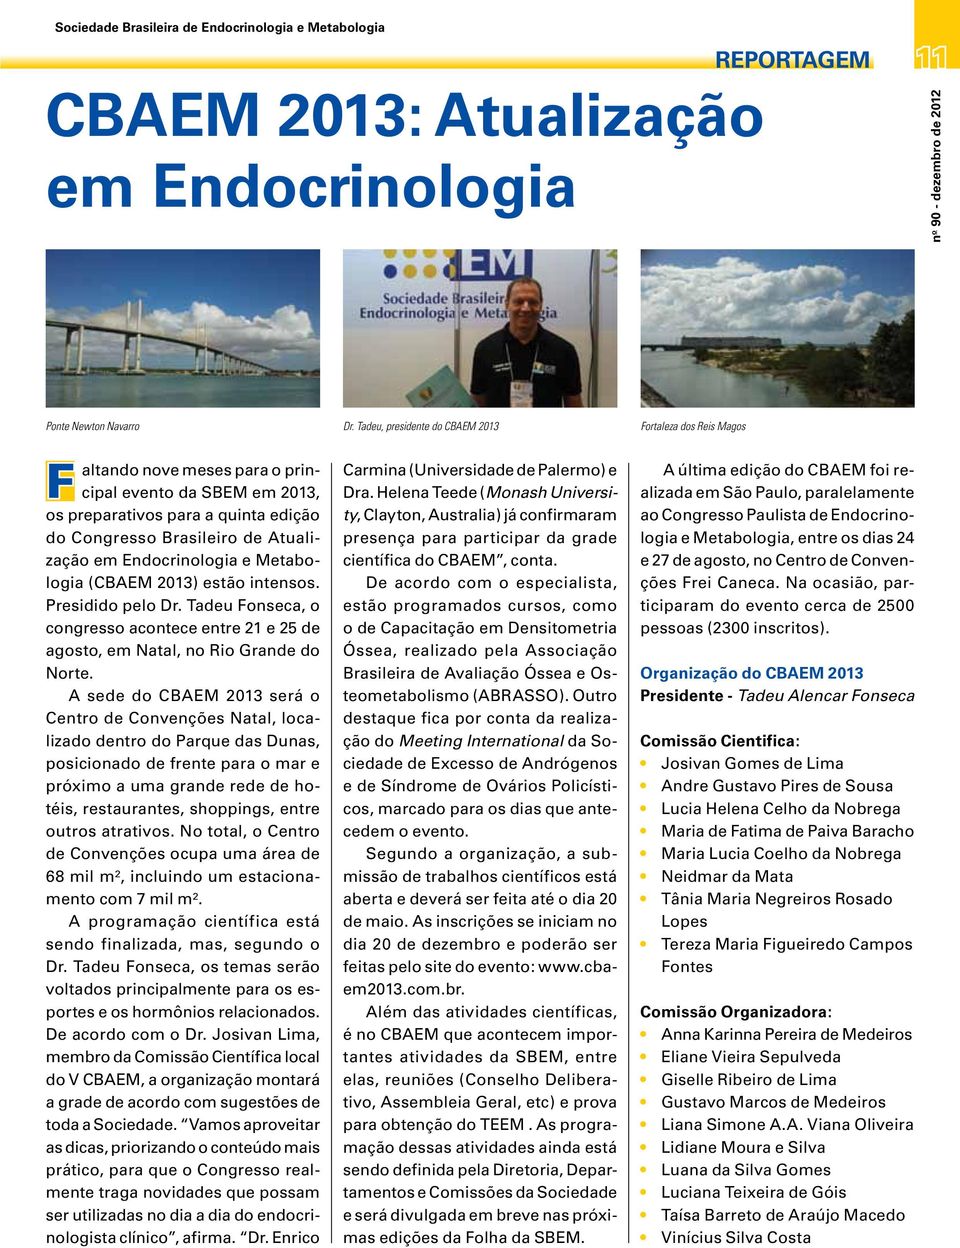 Endocrinologia e Metabologia (CBAEM 2013) estão intensos. Presidido pelo Dr. Tadeu Fonseca, o congresso acontece entre 21 e 25 de agosto, em Natal, no Rio Grande do Norte.